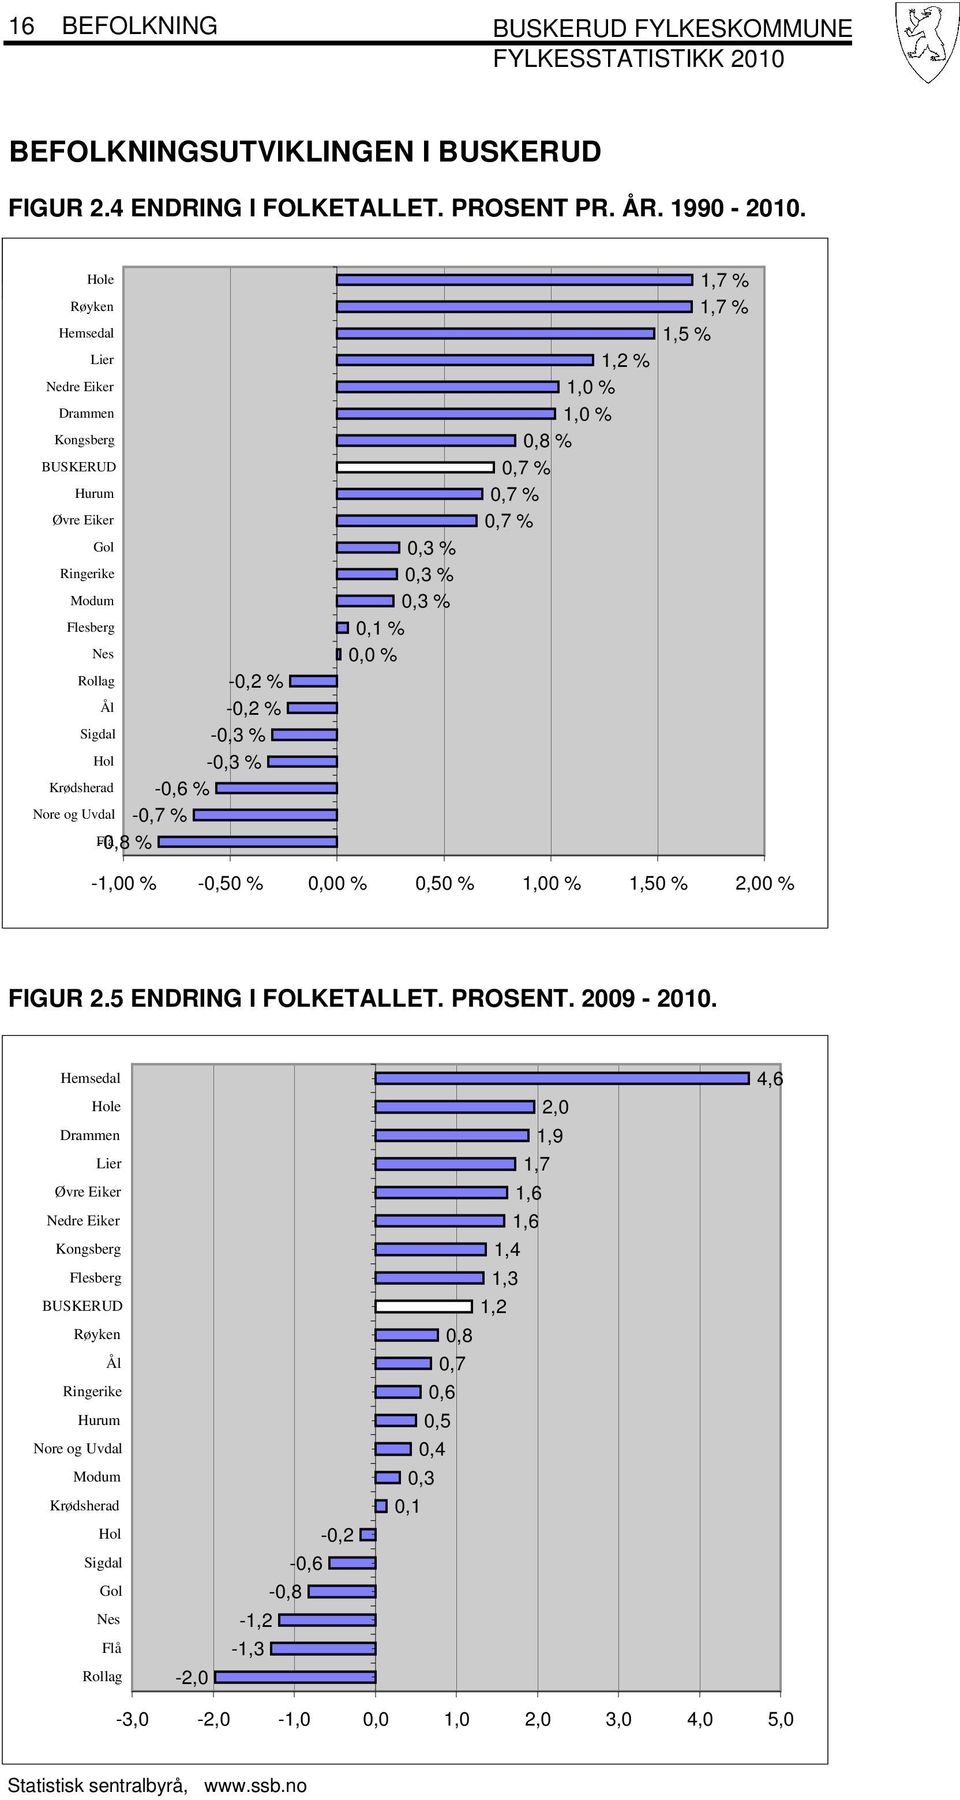 Sigdal 0,3 % 0,3 % 0,3 % 0,1 % 0,0 % 1,2 % 1,0 % 1,0 % 0,8 % 0,7 % 0,7 % 0,7 % 1,7 % 1,7 % 1,5 % -1,00 % -0,50 % 0,00 % 0,50 % 1,00 % 1,50 % 2,00 % FIGUR 2.5 ENDRING I FOLKETALLET. PROSENT. 2009-2010.